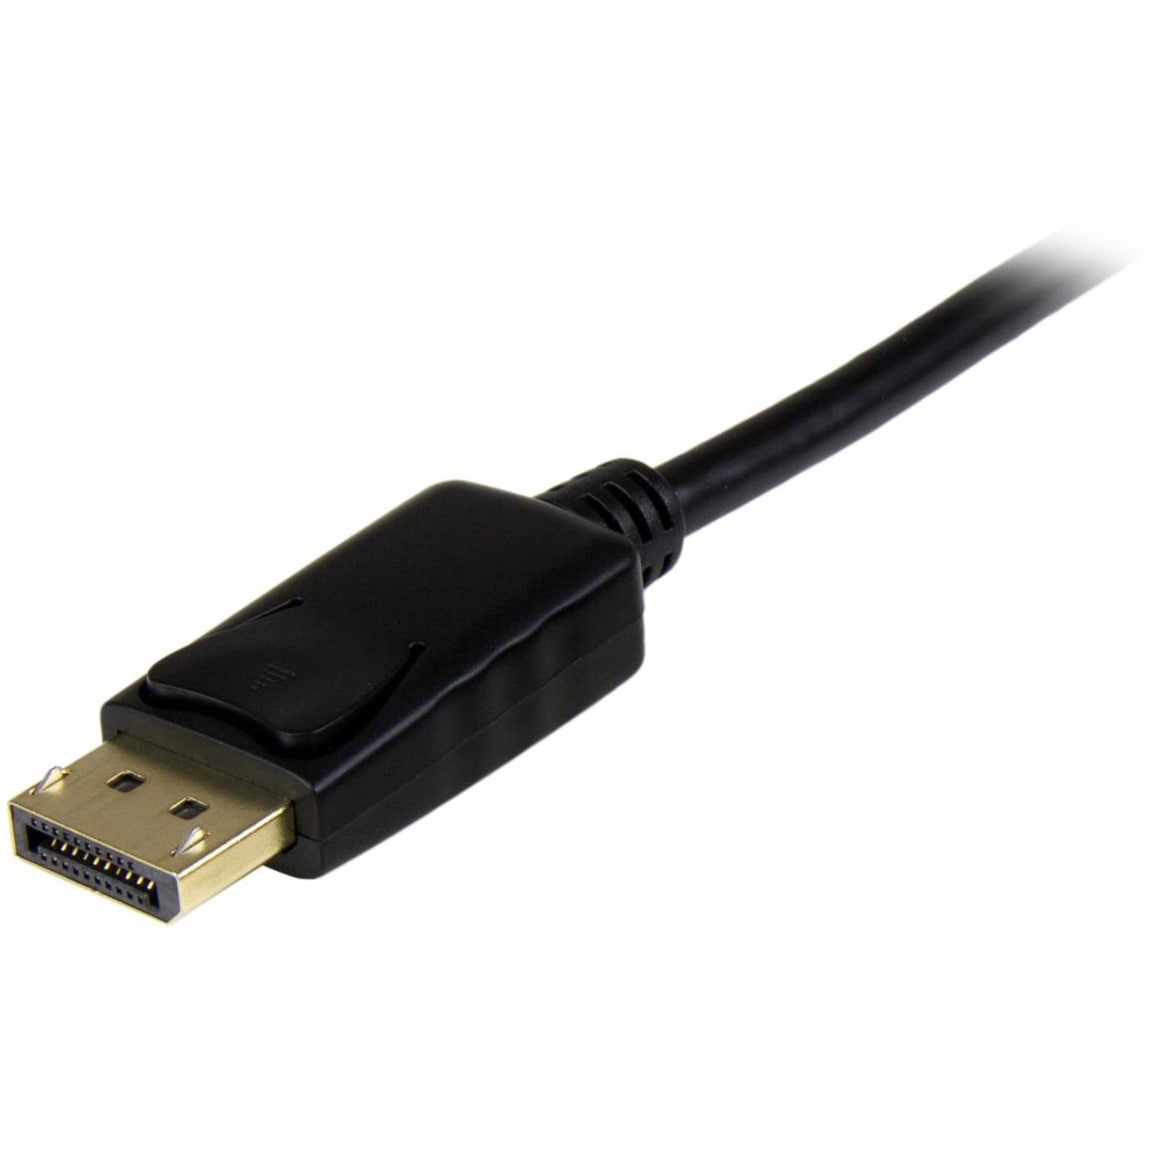 DisplayPort - HDMI 変換アダプタケーブル/DP 1.2 - HDMI ビデオ変換/4K30Hz/ディスプレイポート - HDMI  変換コード/DP - HDMI パッシブケーブル/ラッチつきDPコネクタ